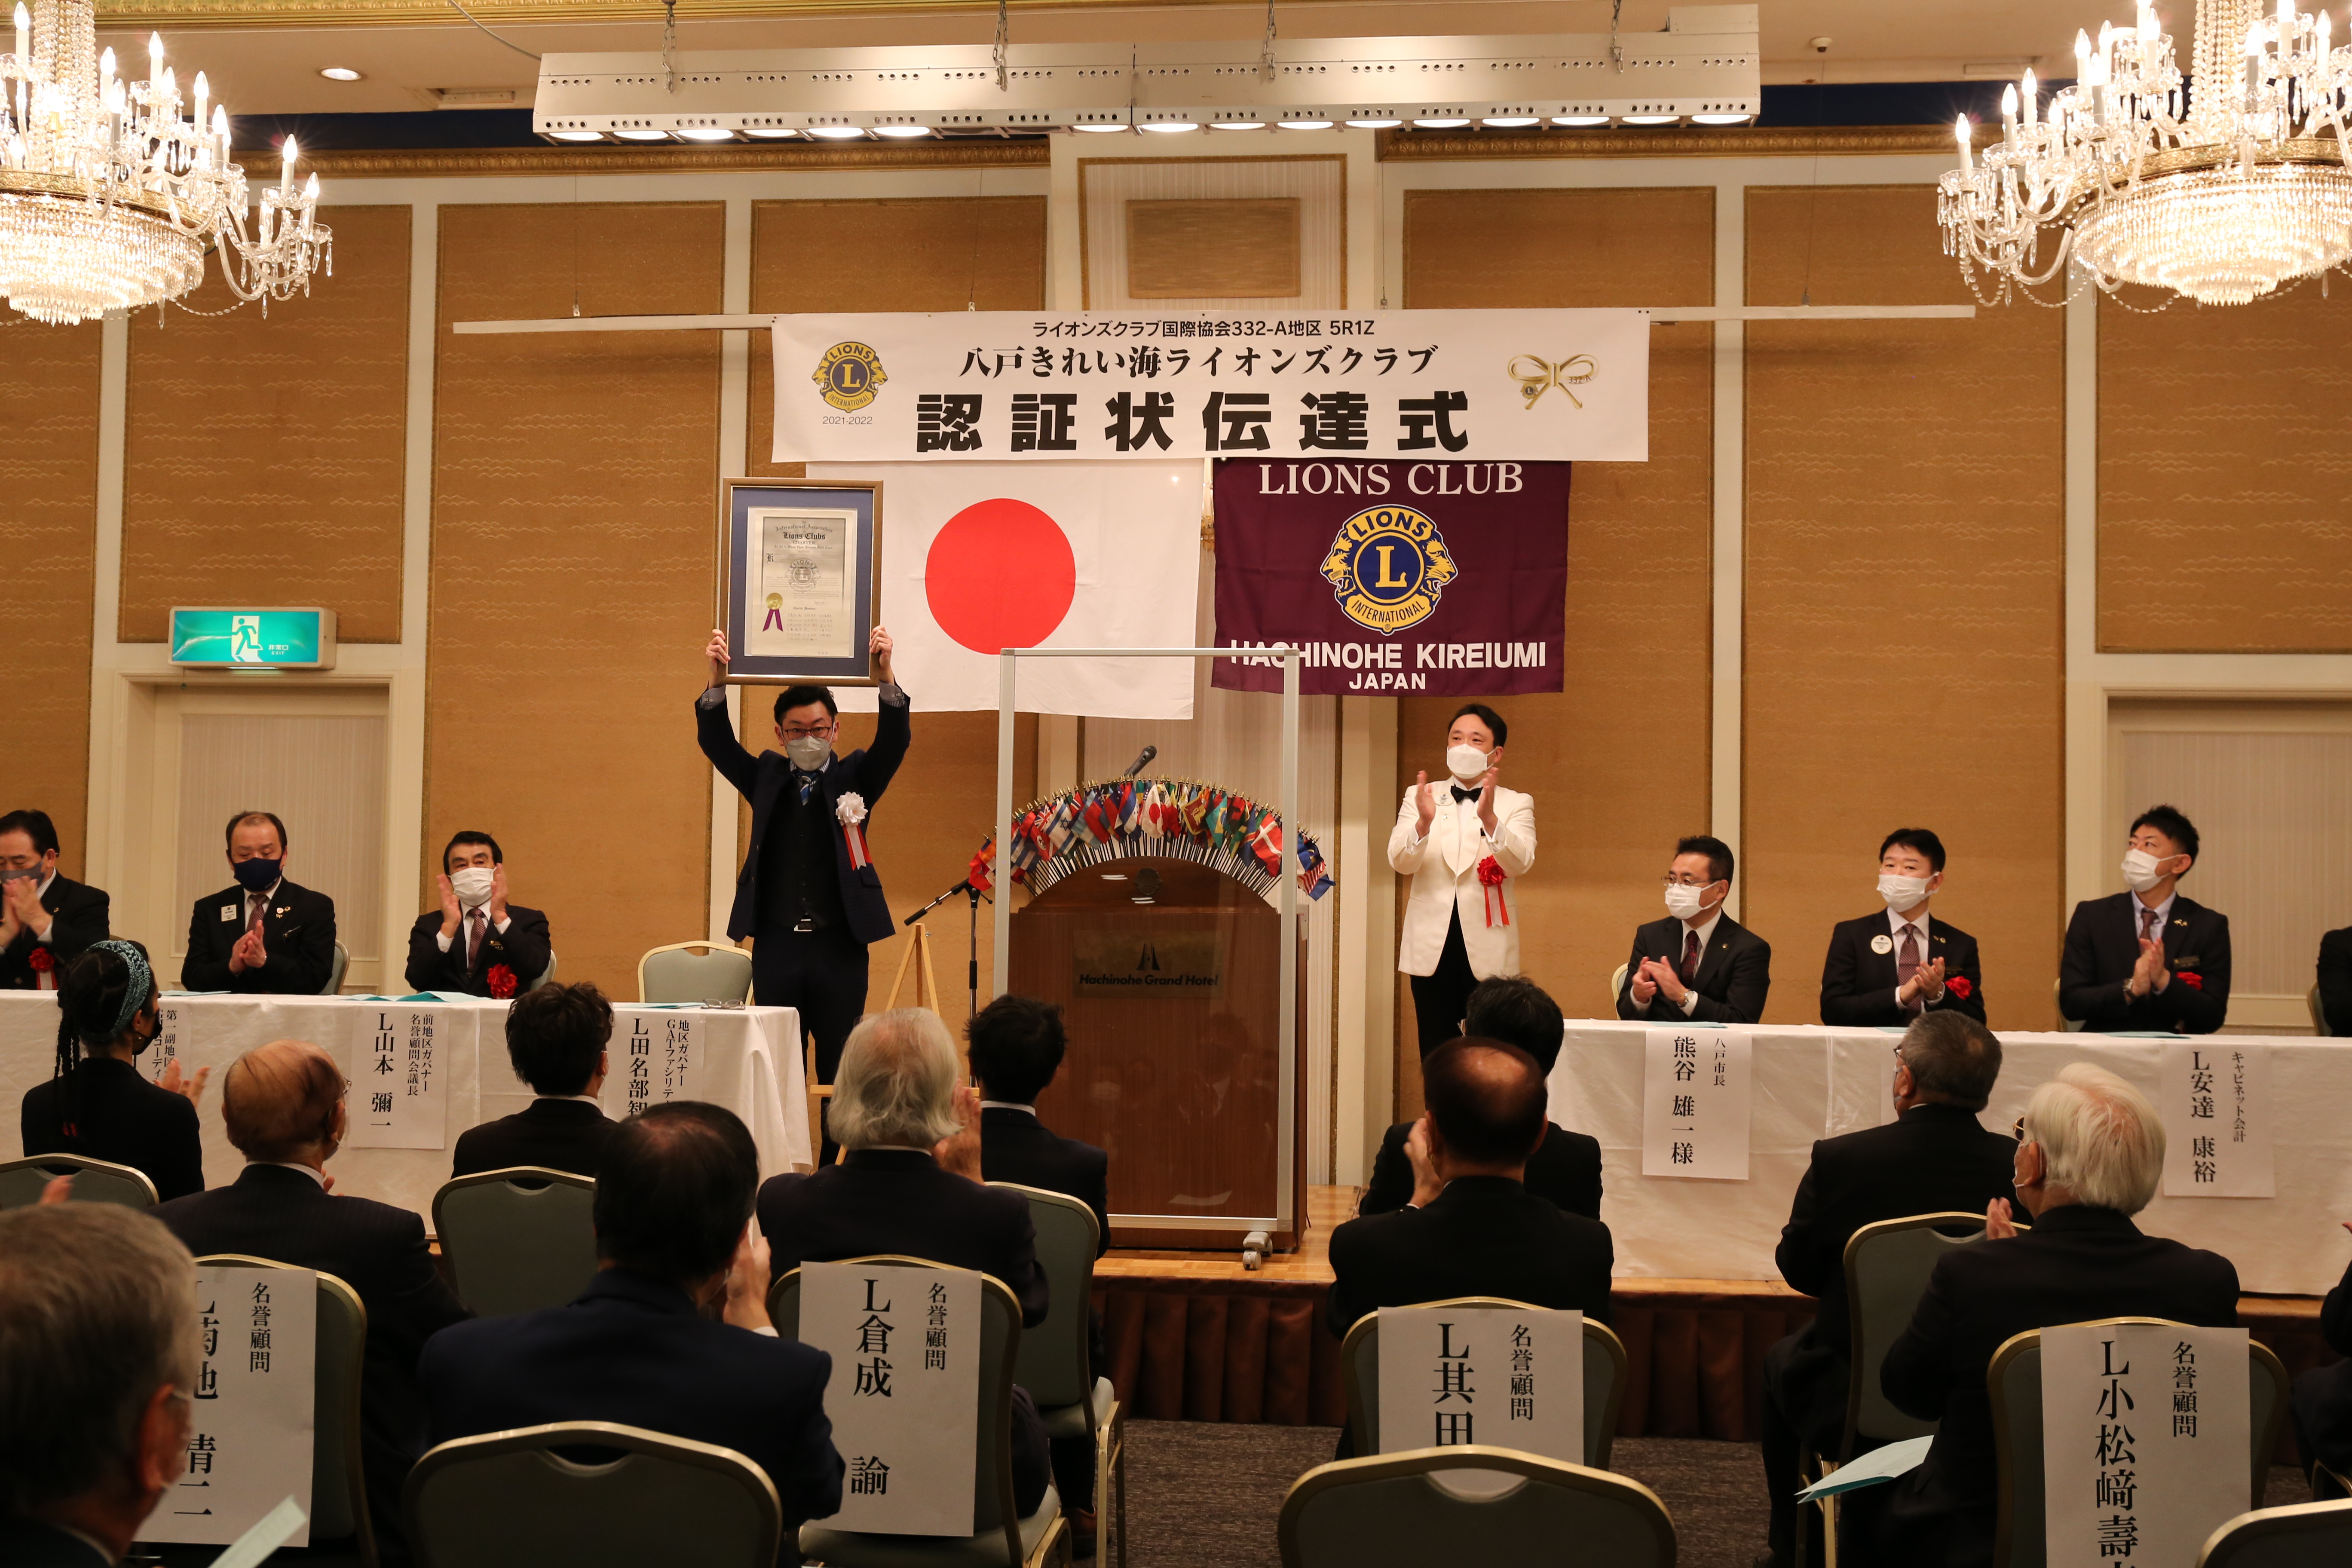 La Serata della Charter per il Lions Club Hachinohe Kireiumi